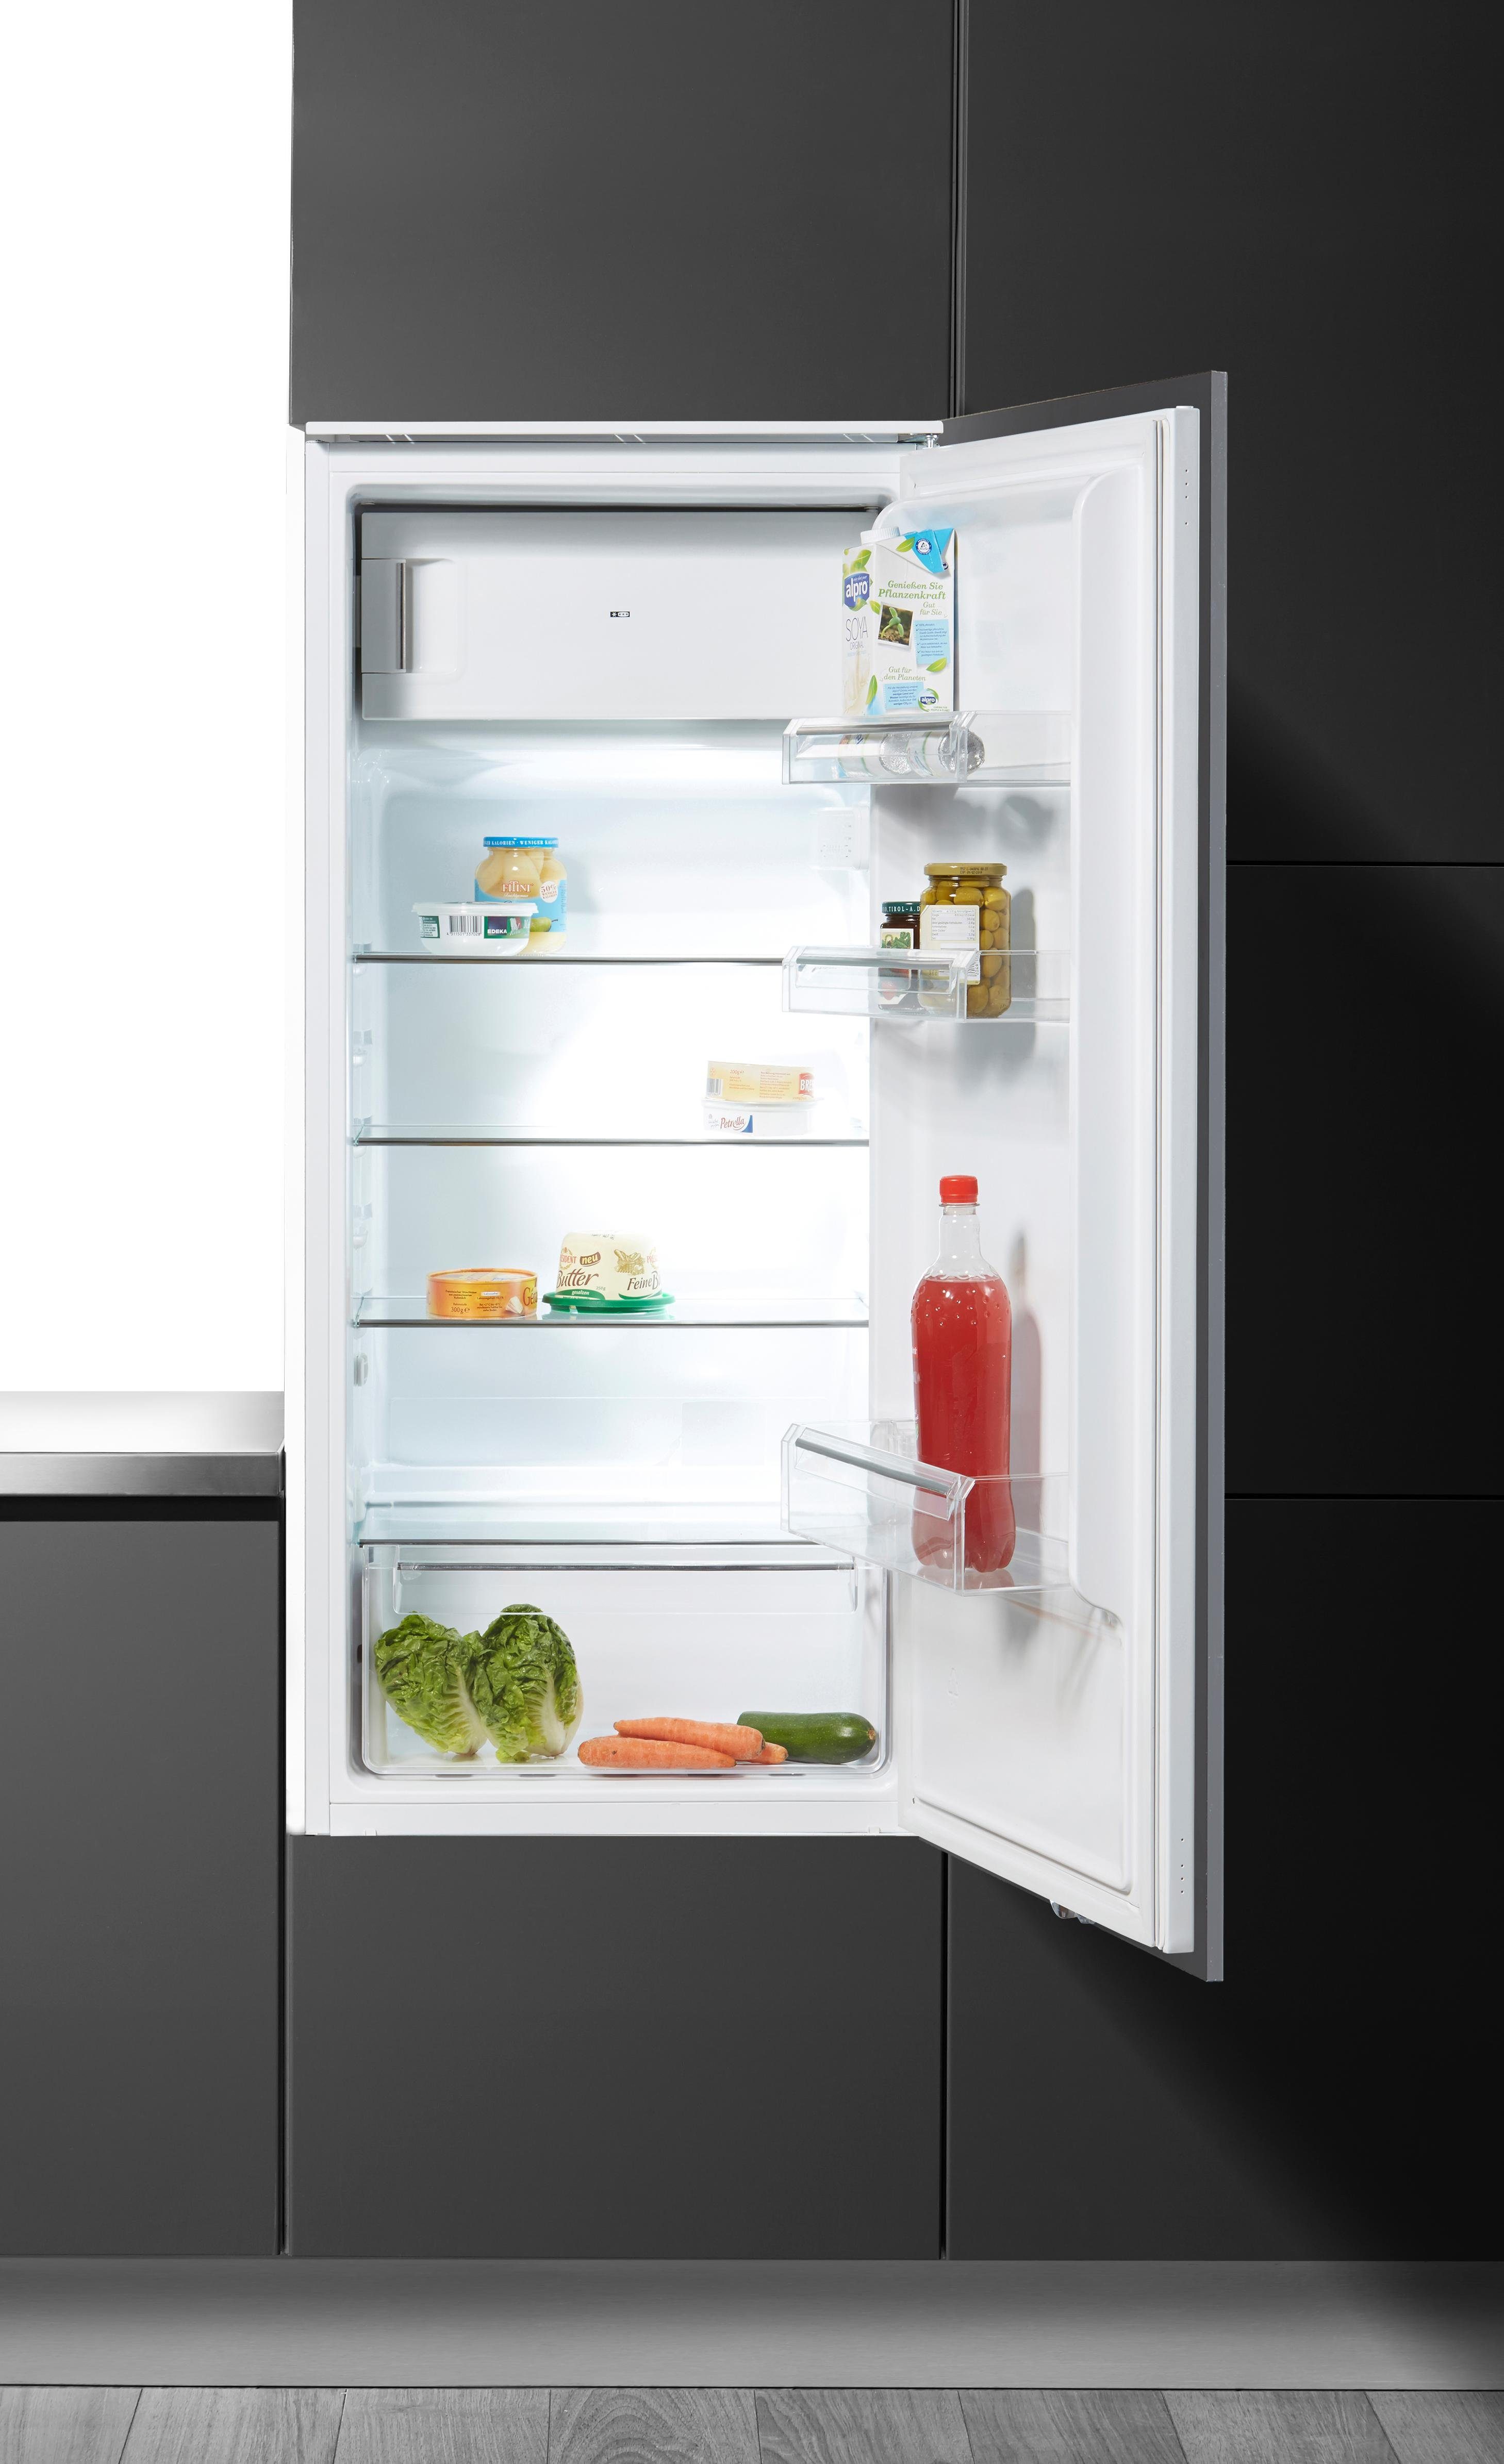 Einbaukühlschränke kaufen » Passende Geräte für jeden Haushalt | OTTO